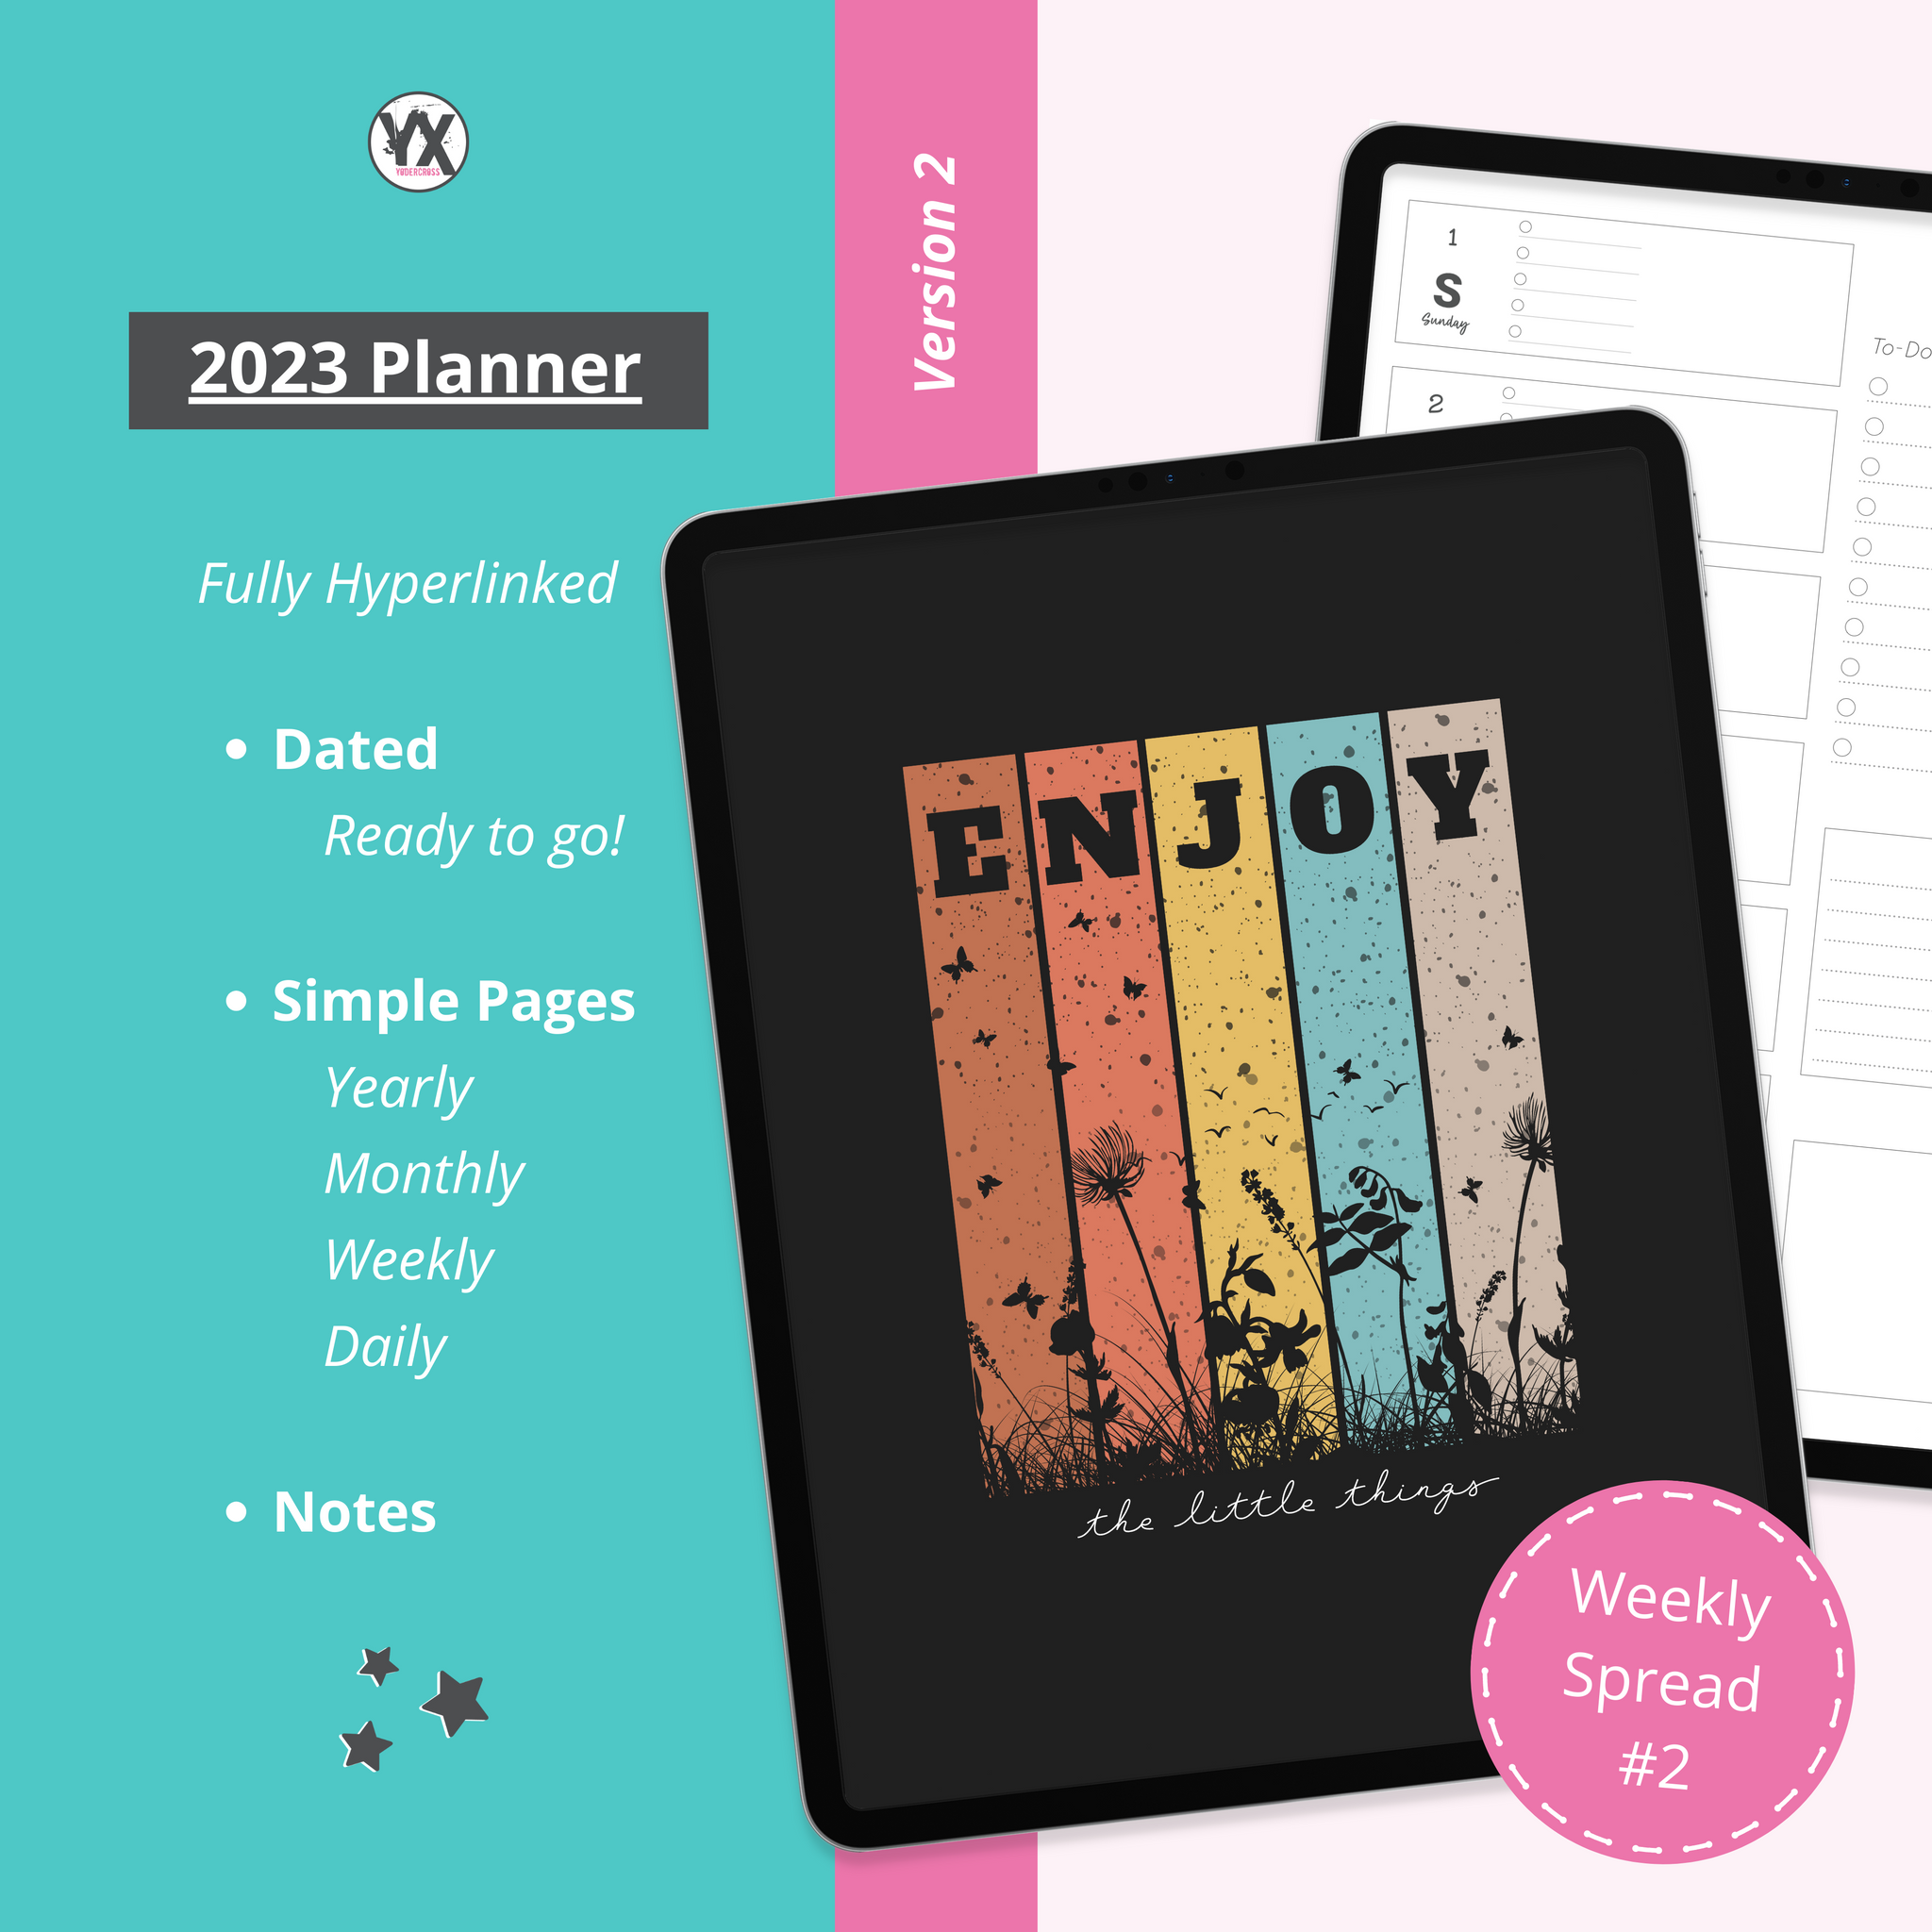 2023 Planner -- Version 2